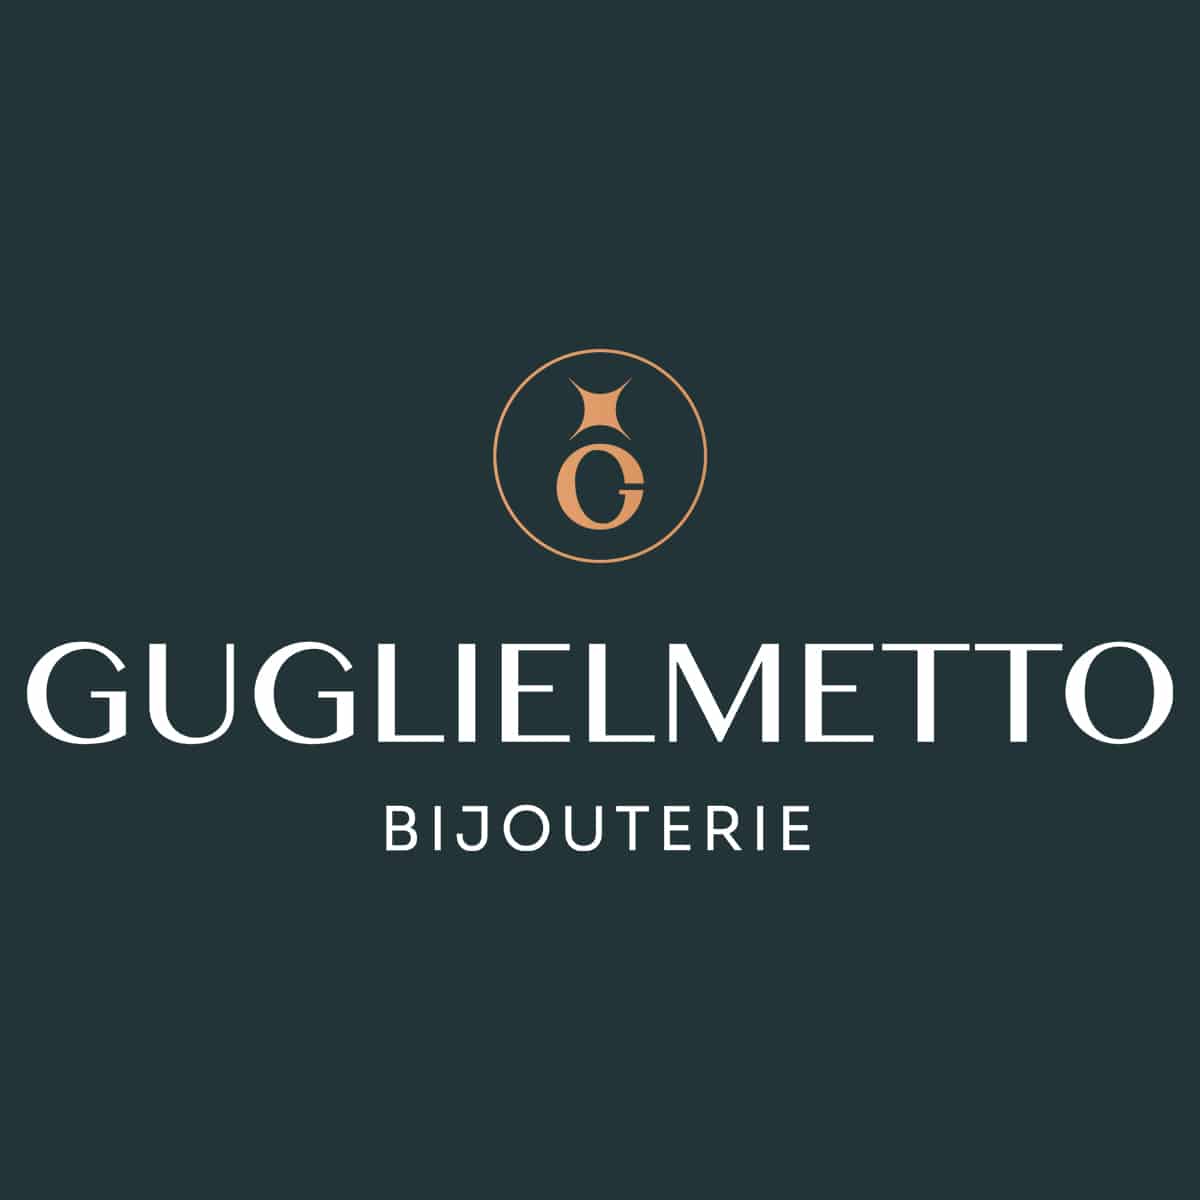 Bijouterie Guglielmetto - Createur Joaillier beaujolais